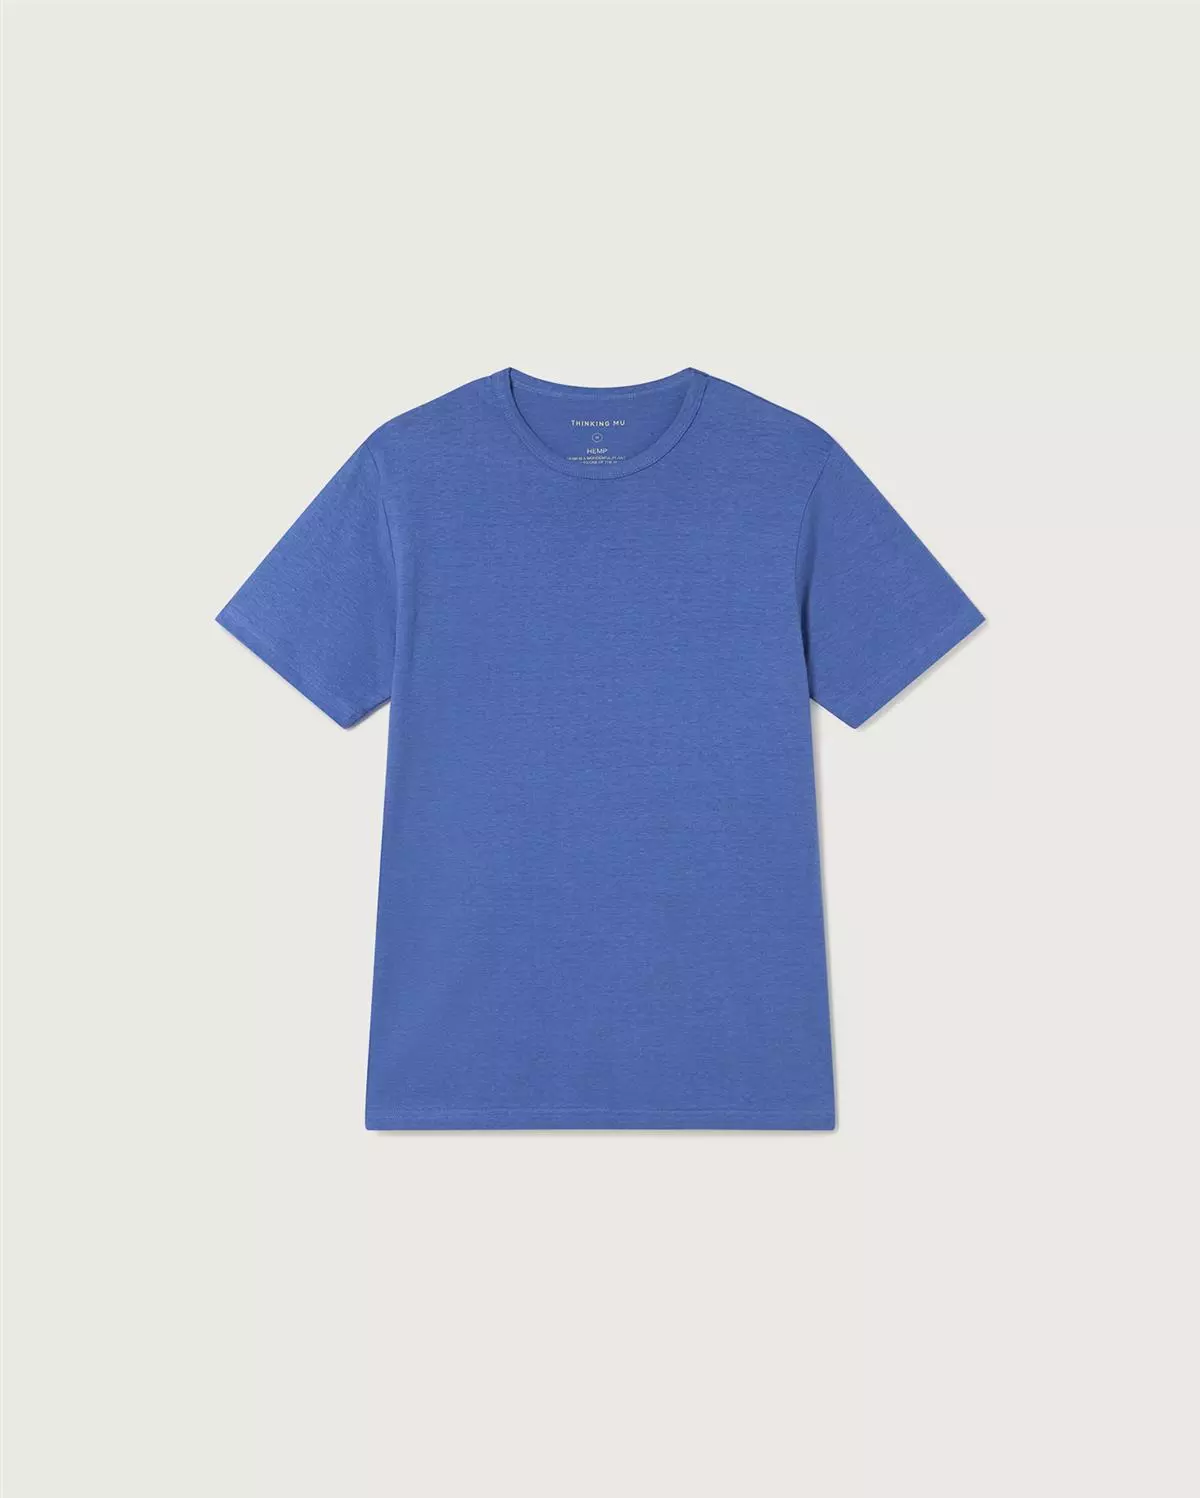 T-Shirt Modell: Hemp